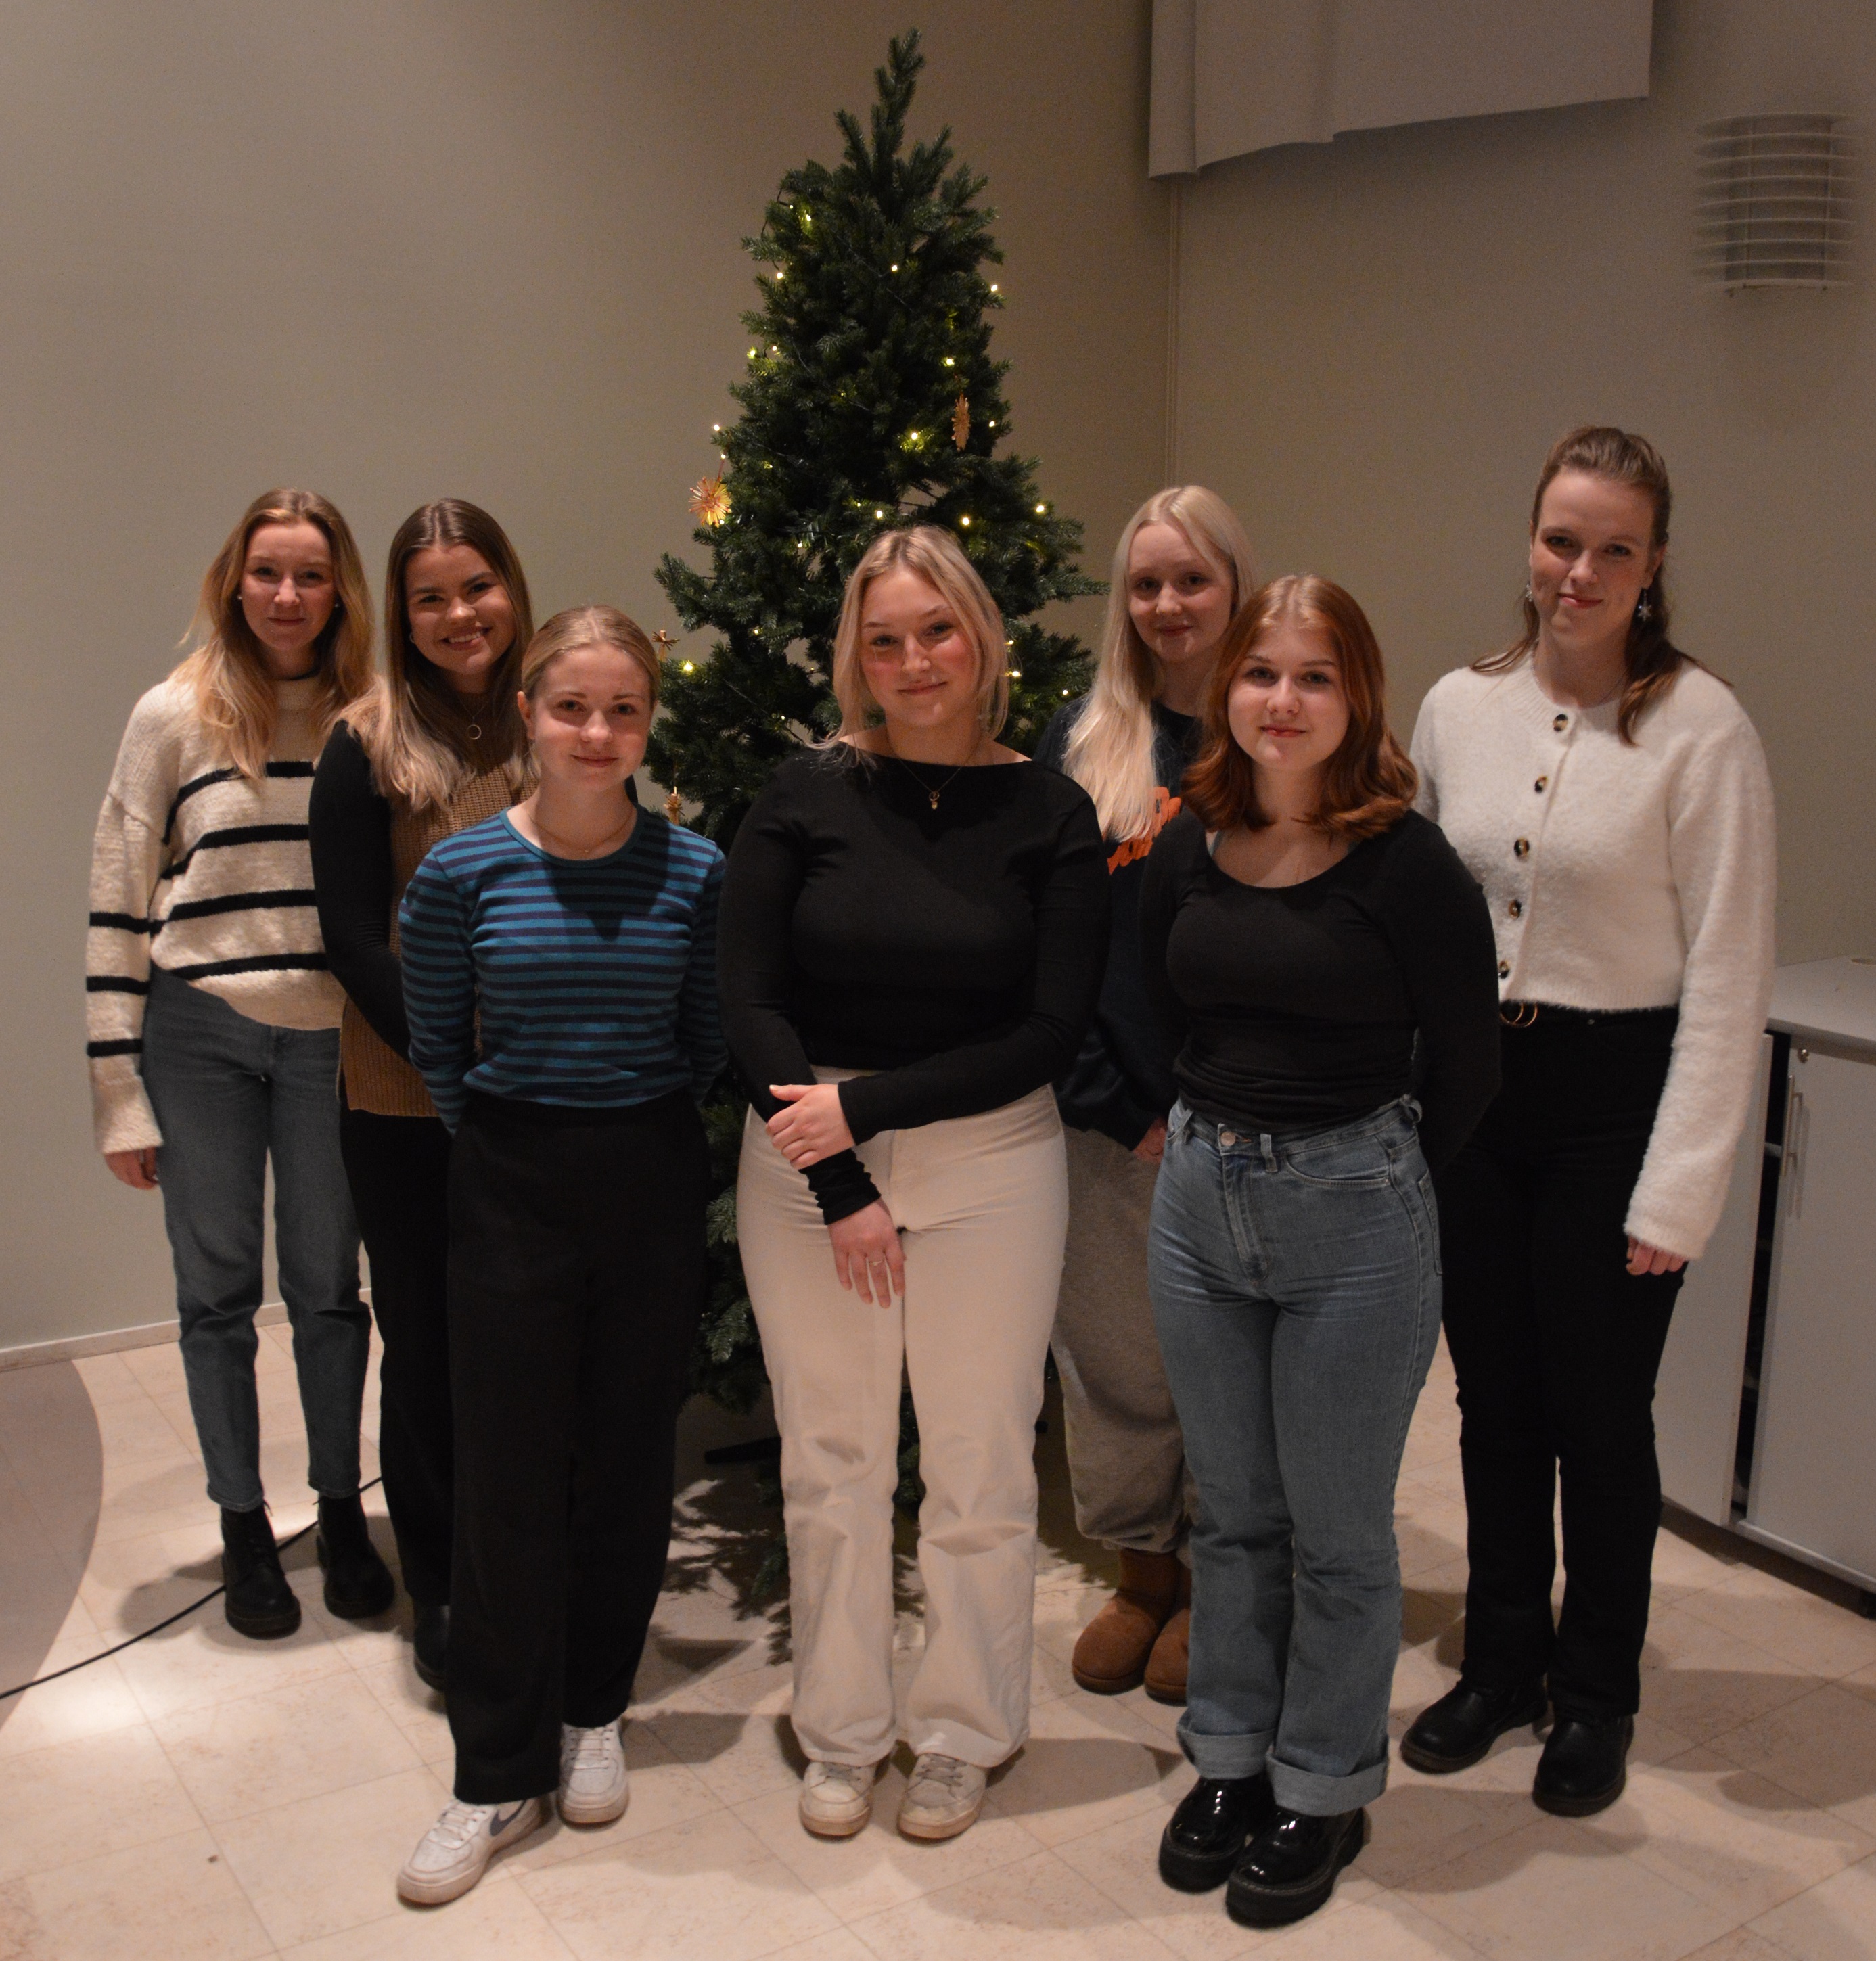 Marie Brunell, Emma Vikman, Alma Långbacka, Agnes Wikar, Kia Kulla, Ida-Maria Åkerlund och Krista Kuniala uppställda framför julgranen.